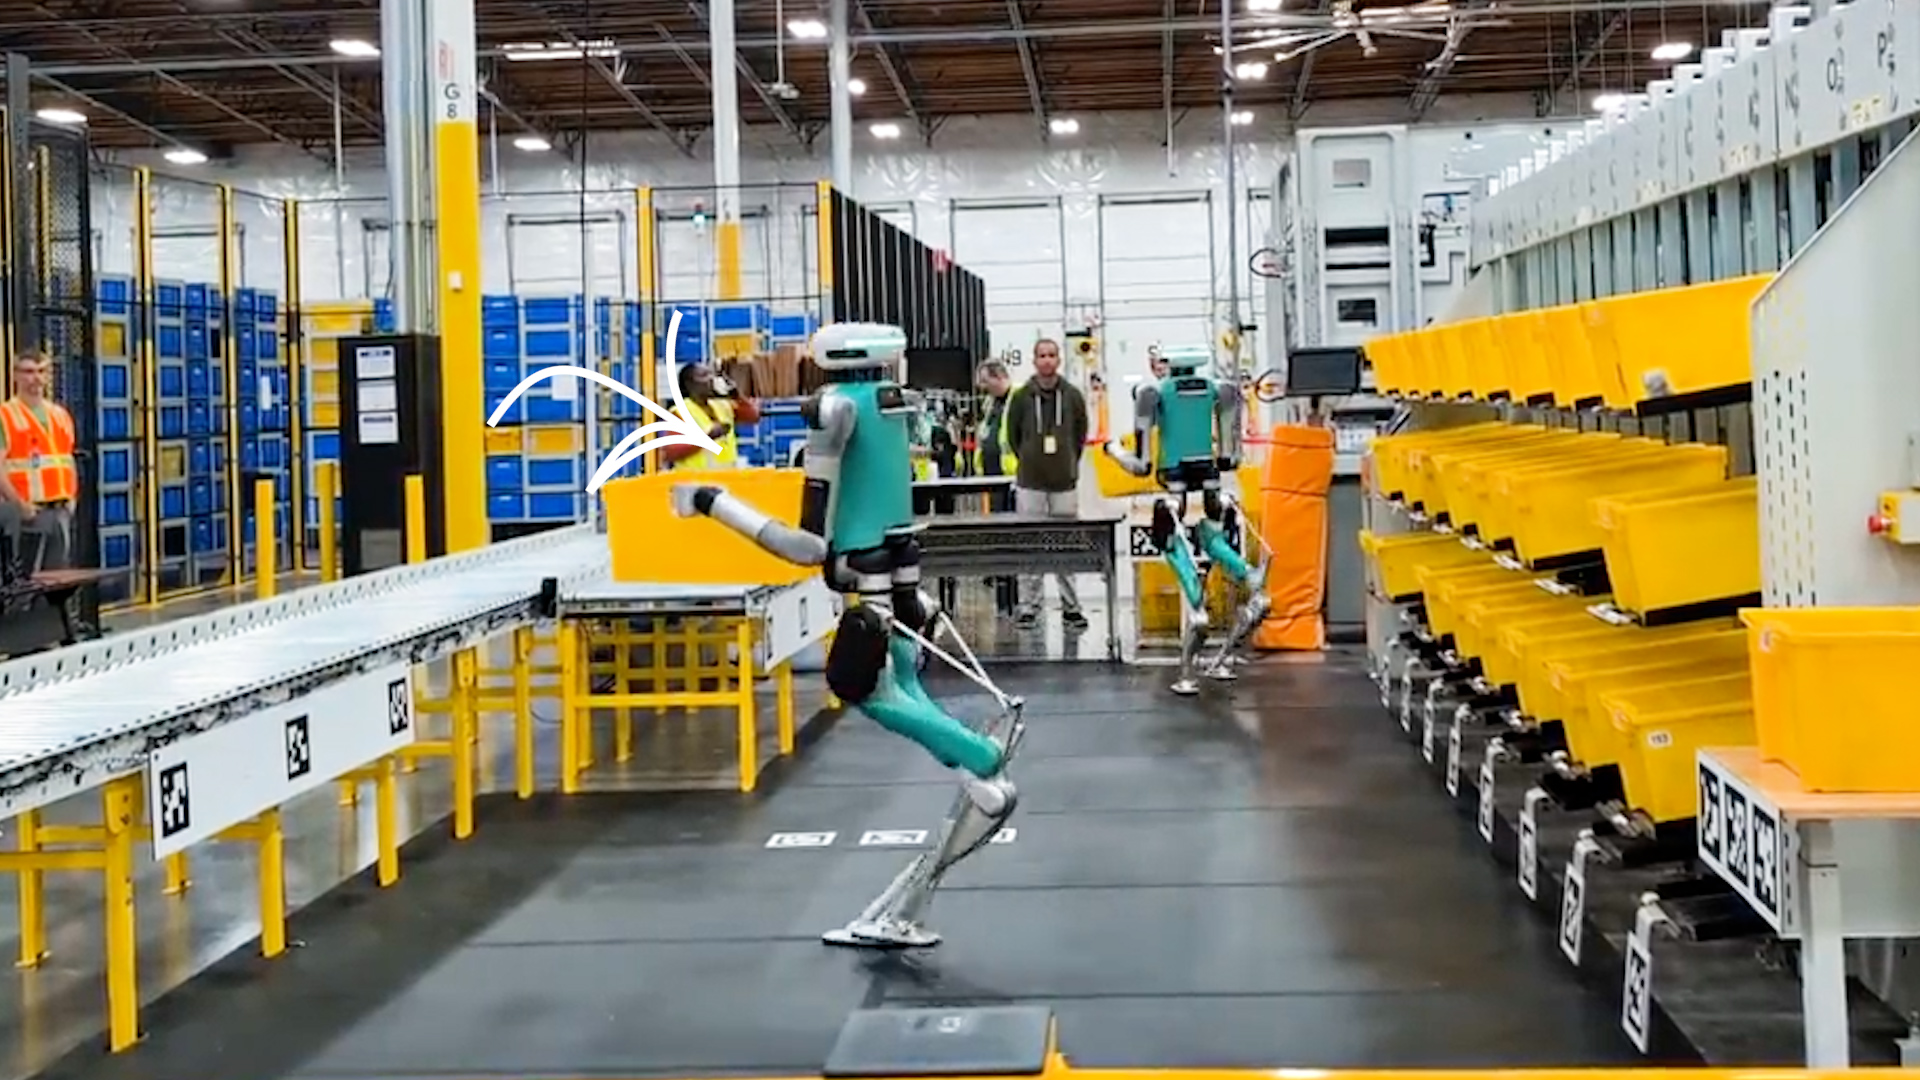 Ces robots se nomment Digit. Avec des bras, des jambes, ils peuvent se déplacer comme des humains